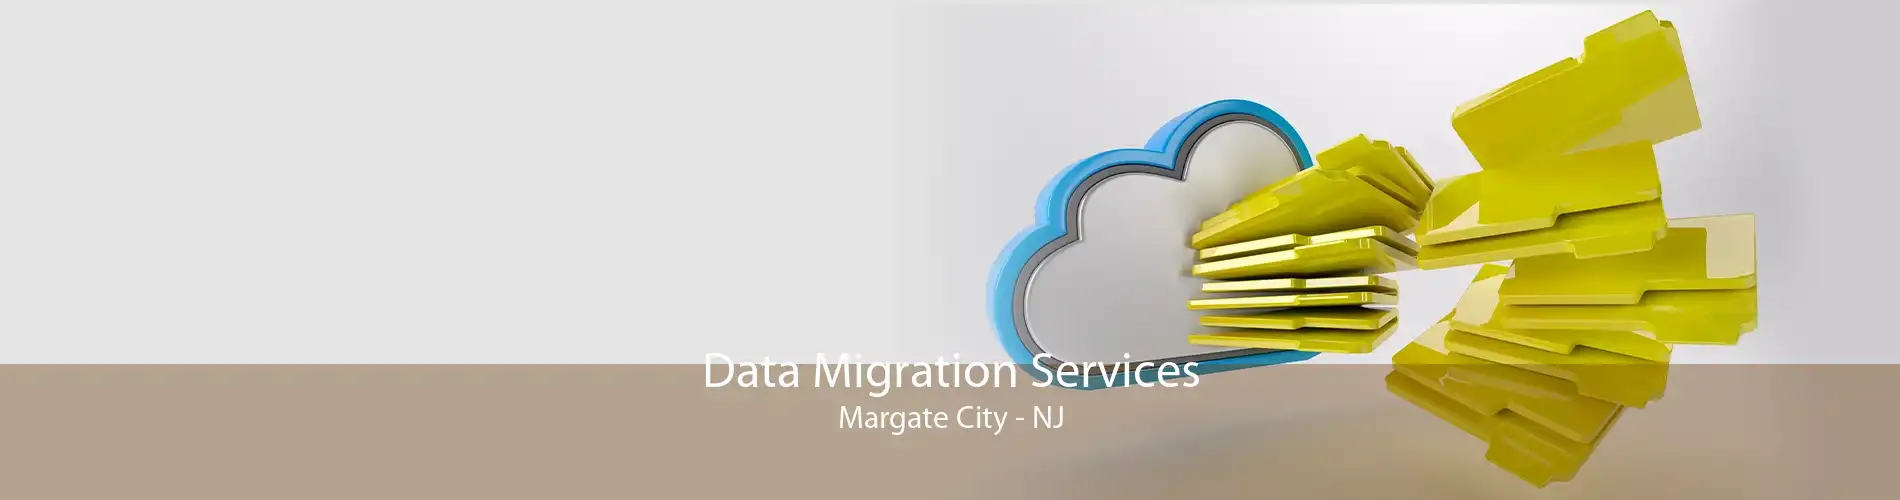 Data Migration Services Margate City - NJ